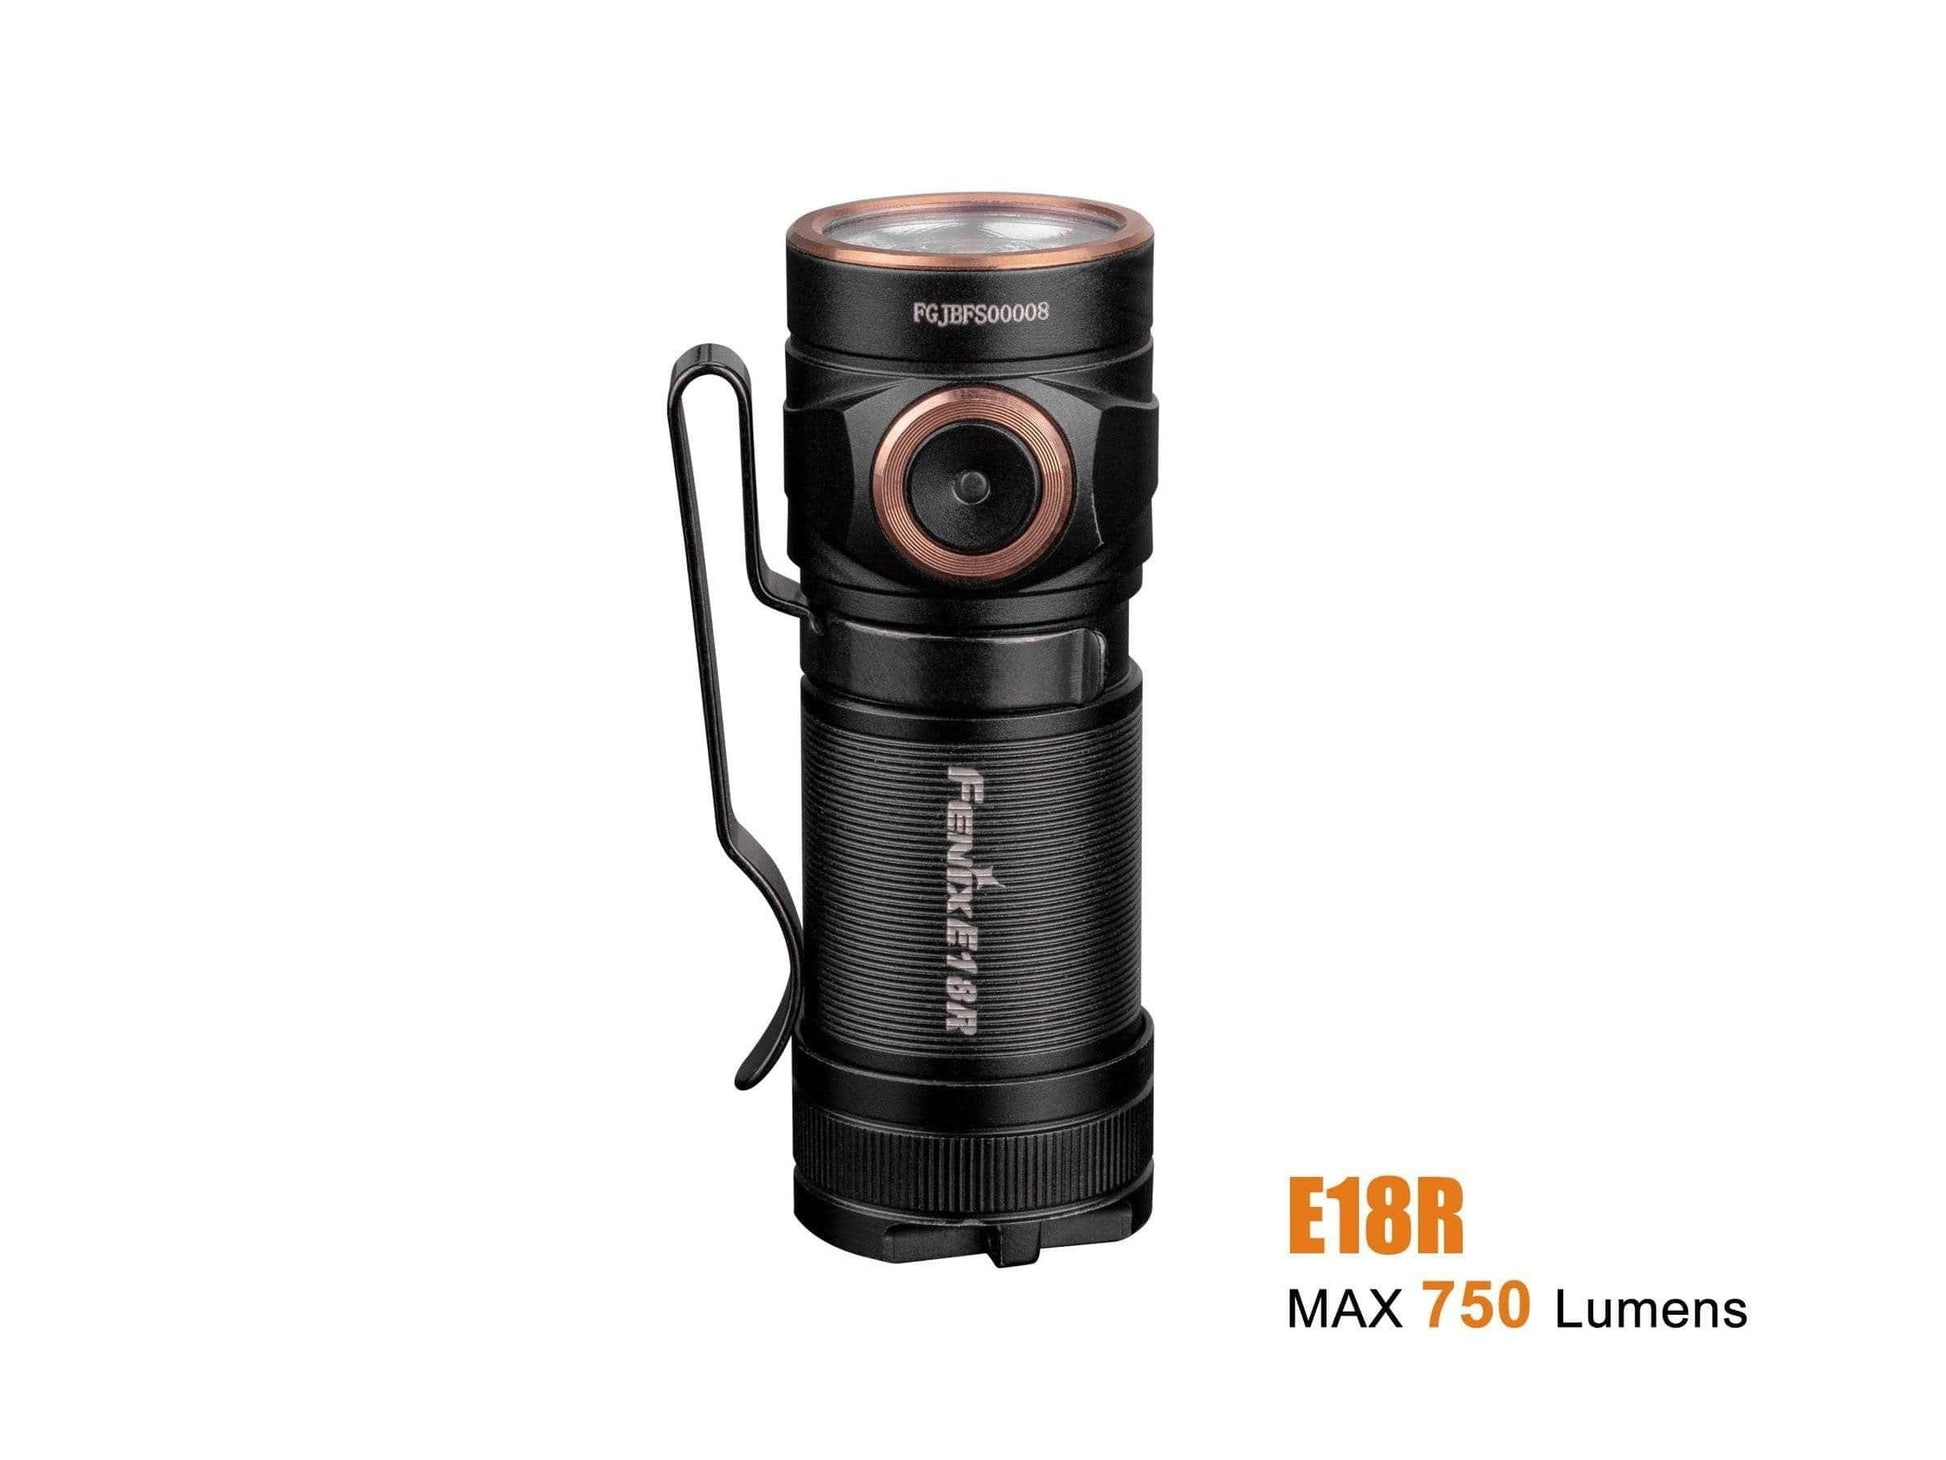 Fenix E18R - 750 lumens - rechargeable et ultra compact Site Officiel FENIX® - Votre boutique en ligne Fenix®